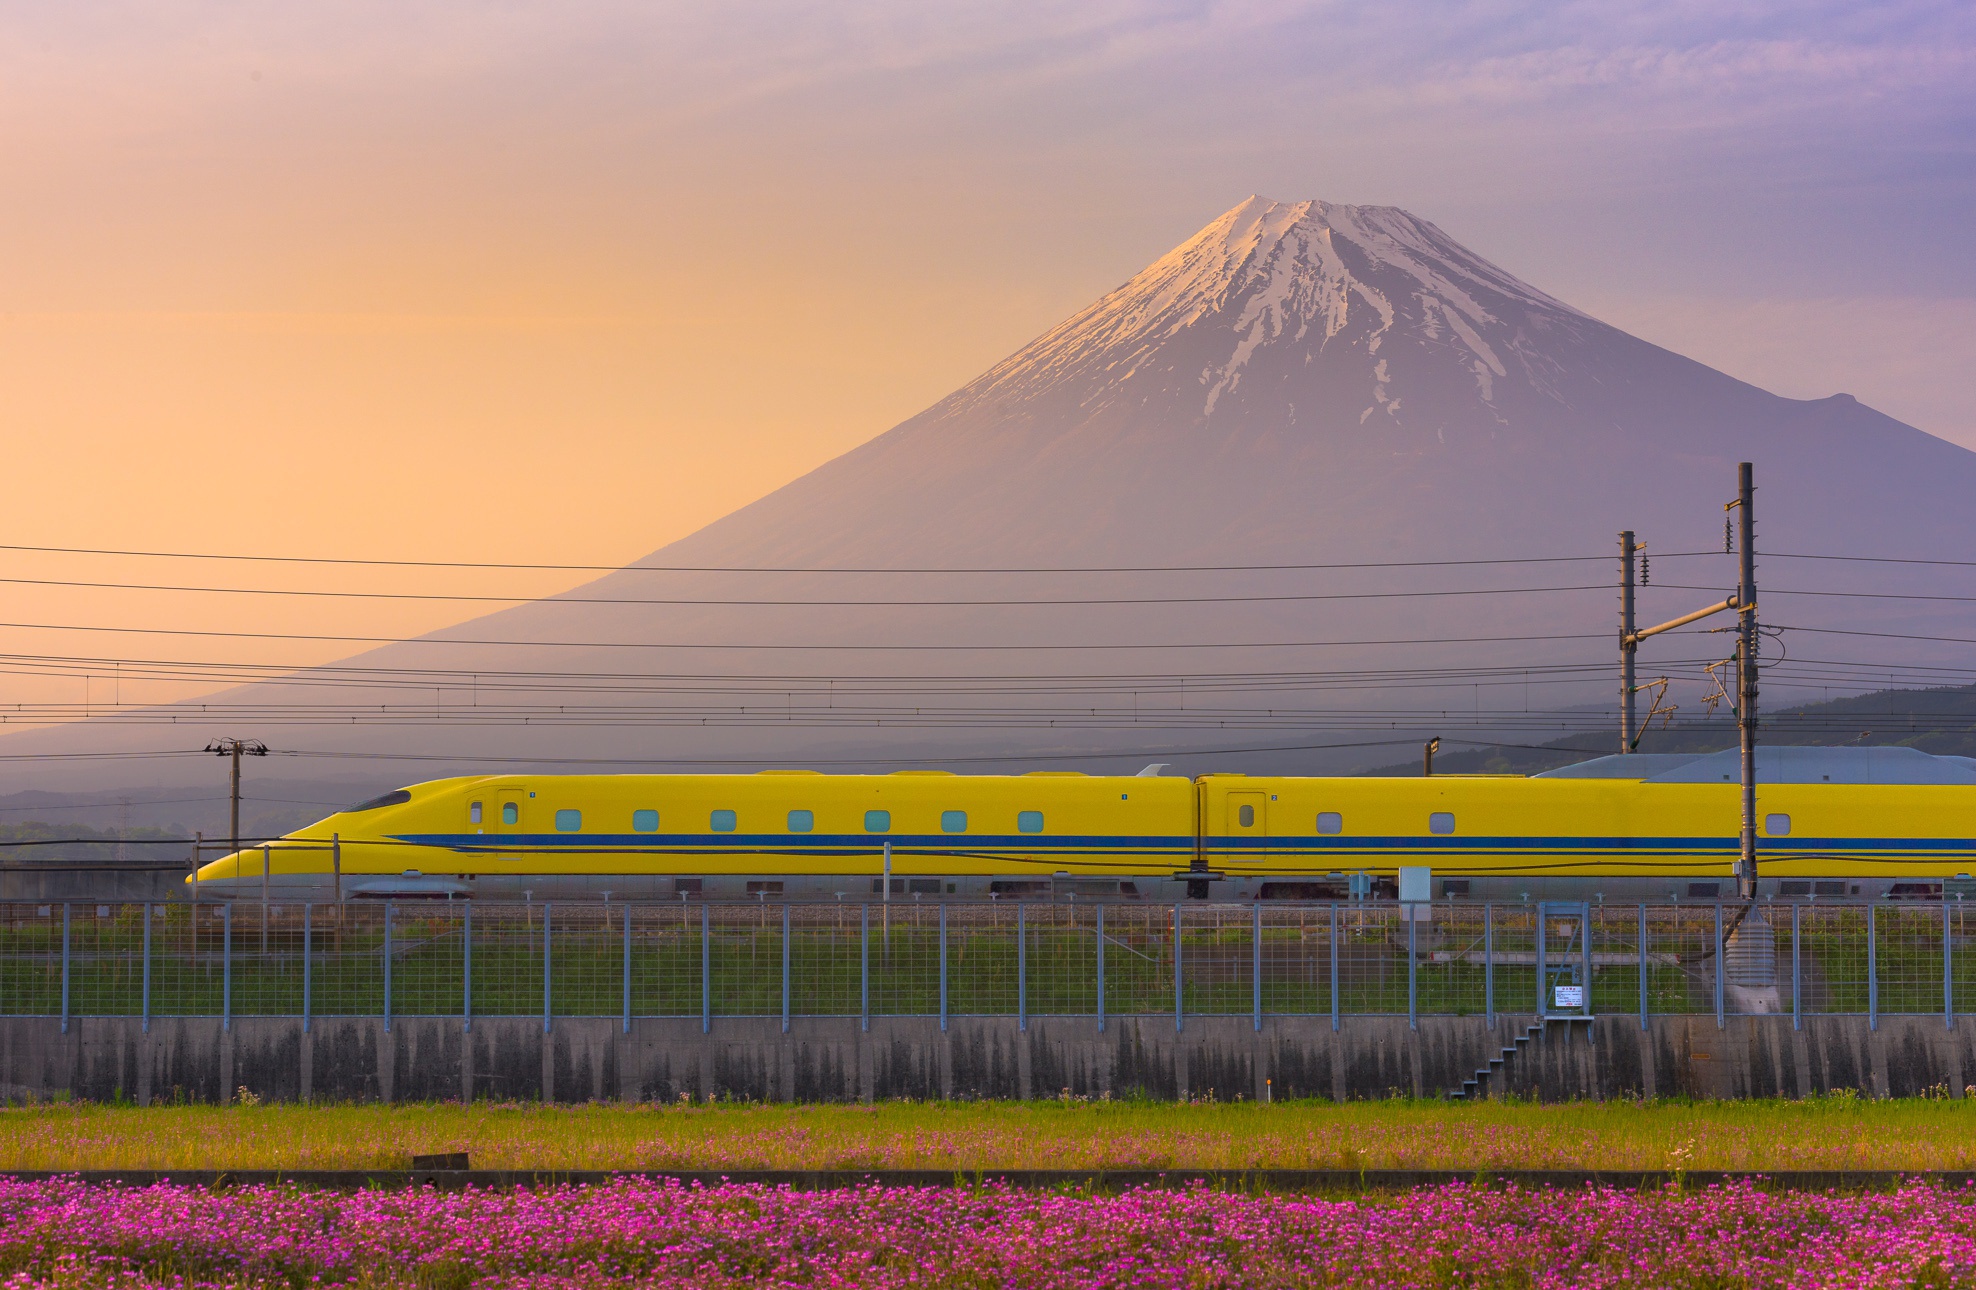 General 1976x1290 train Japan Asia Mount Fuji Shinkansen